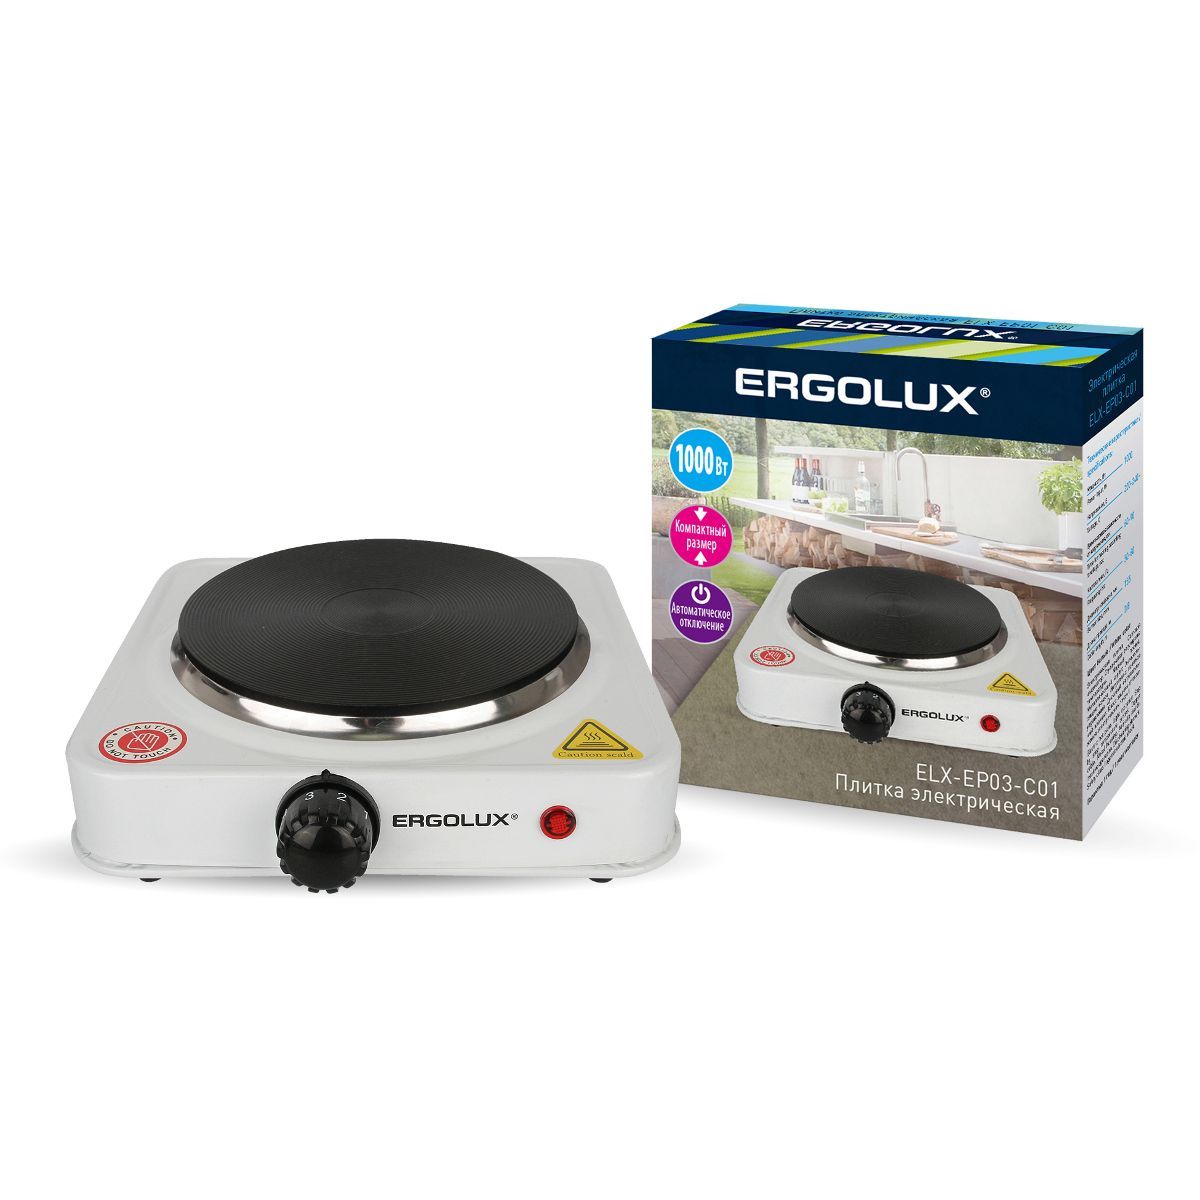  ERGOLUX ELX-EP03-C01 